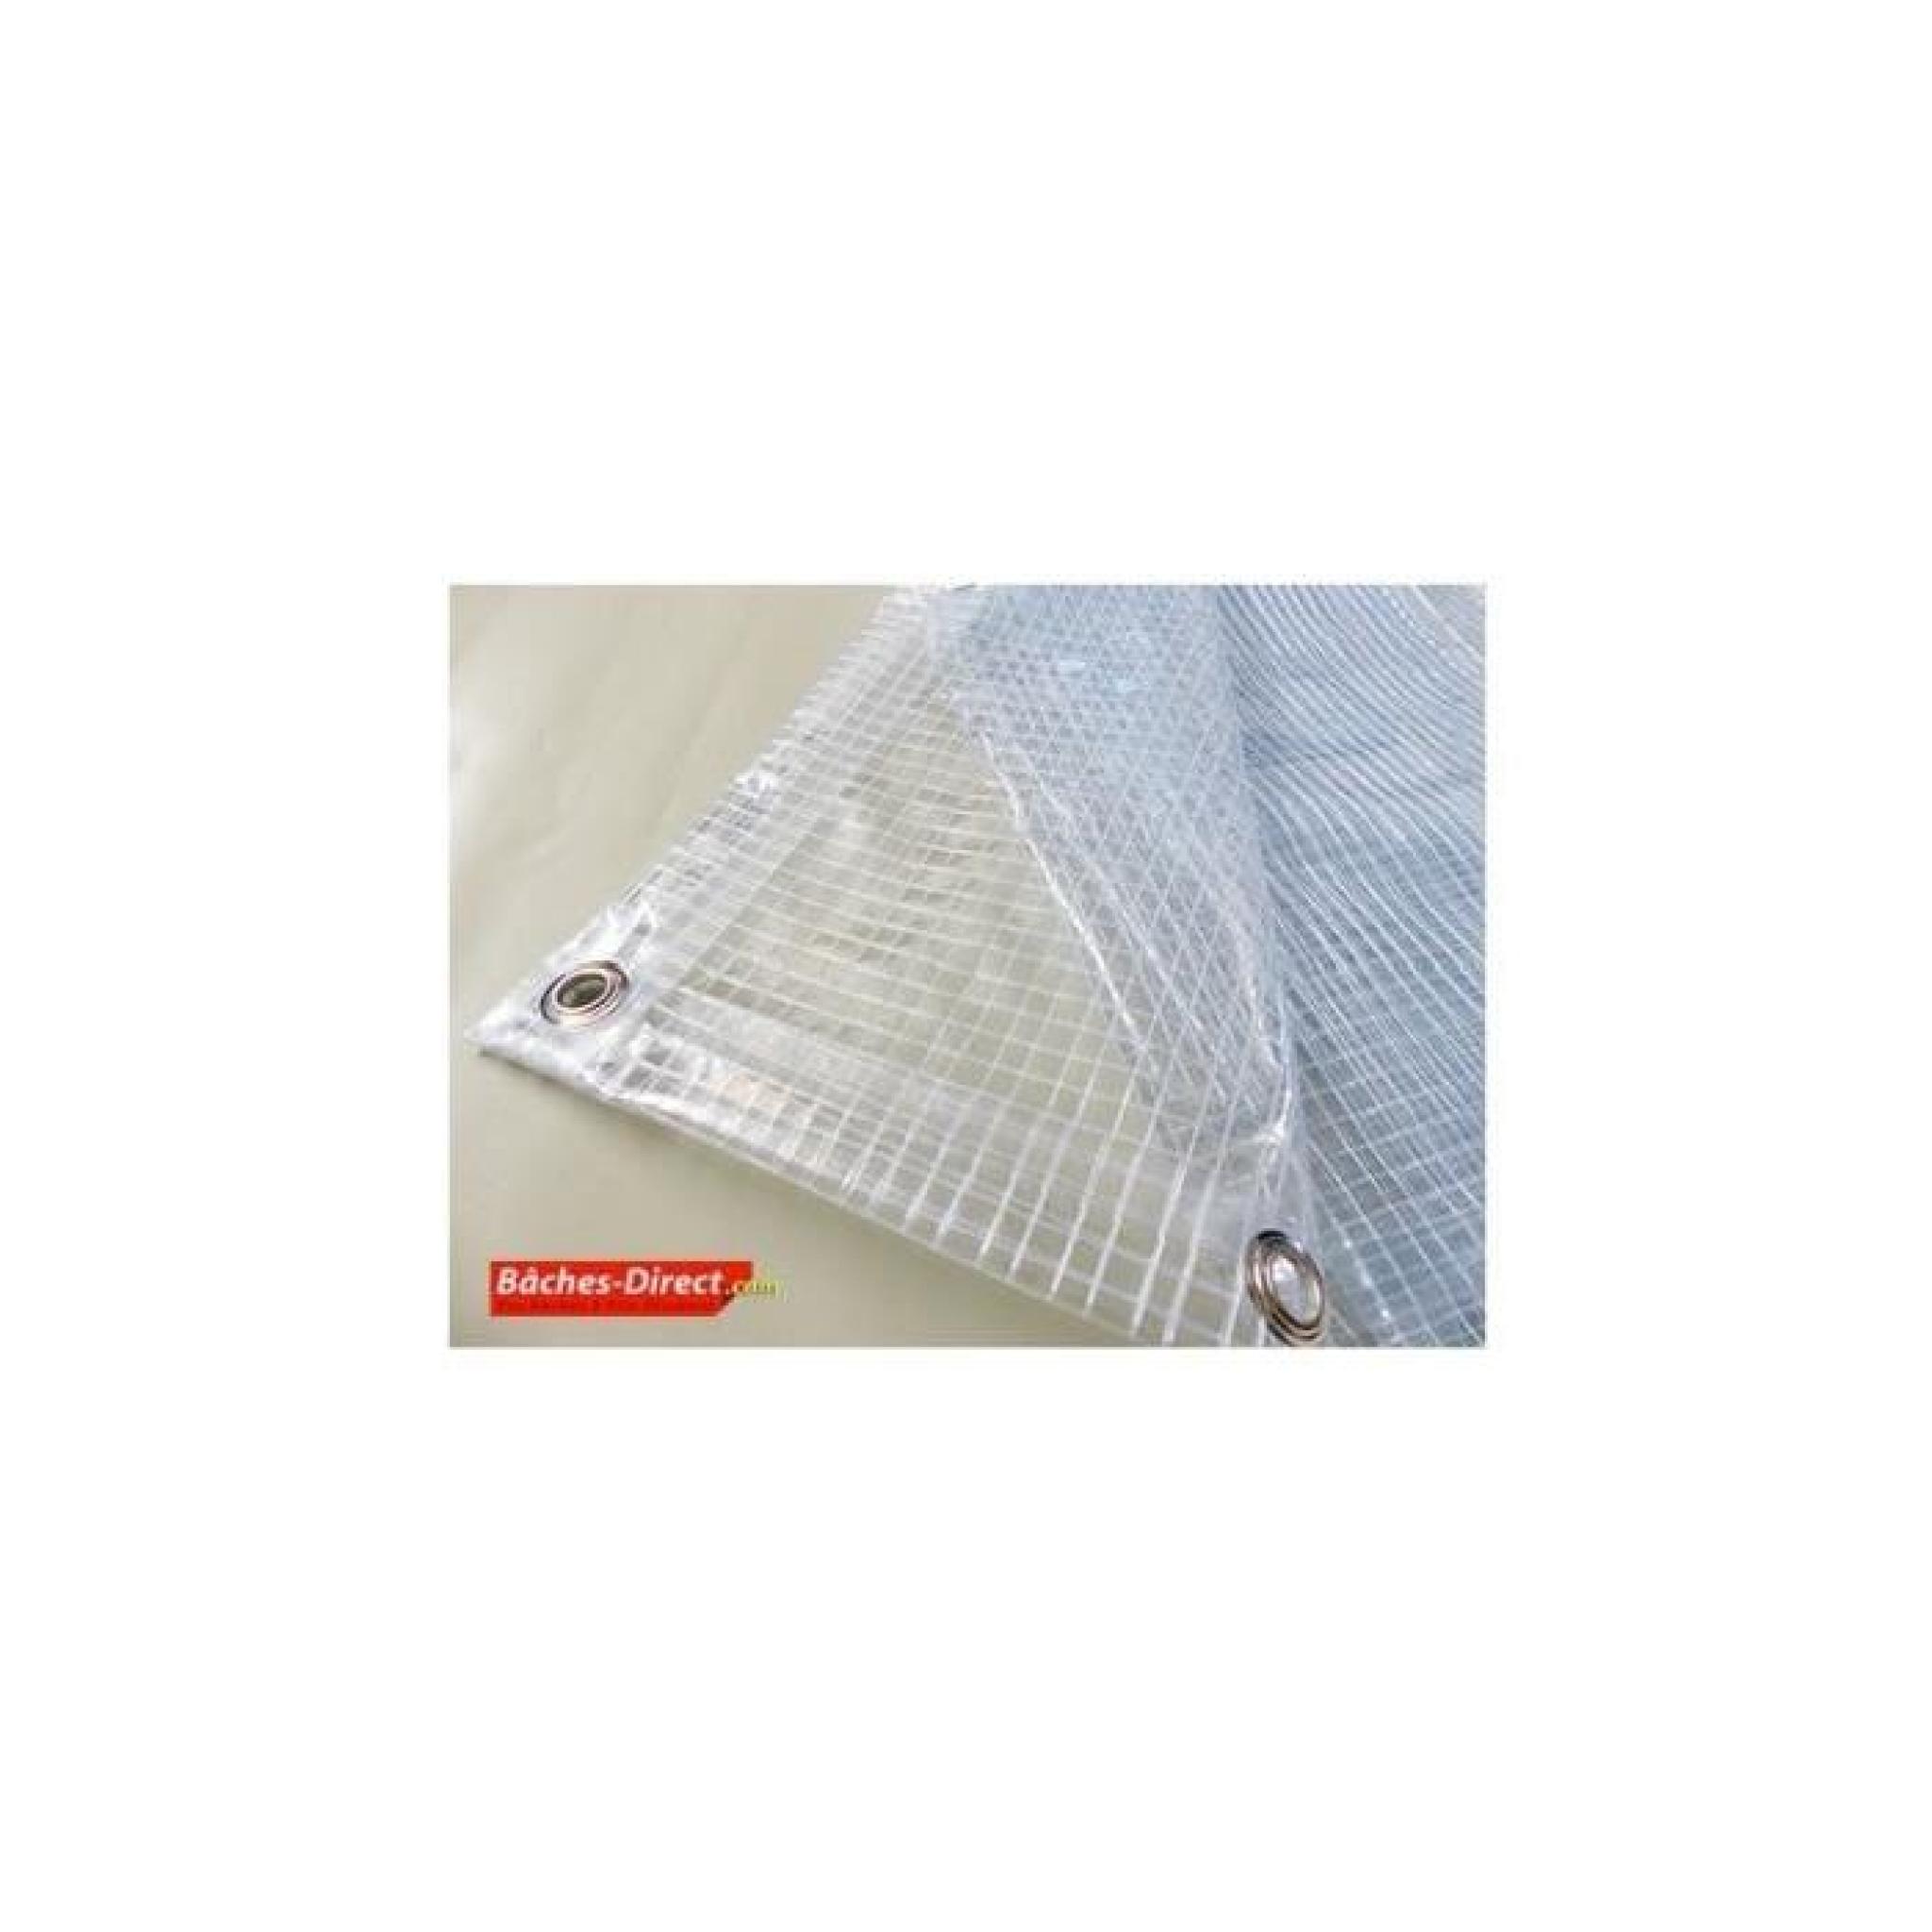 BACHES DIRECT - Bâche Pergola 400 g/m² - 3.8 x 4 m - bache transparente pour toile de pergola - bache imperméable Transparente Armée